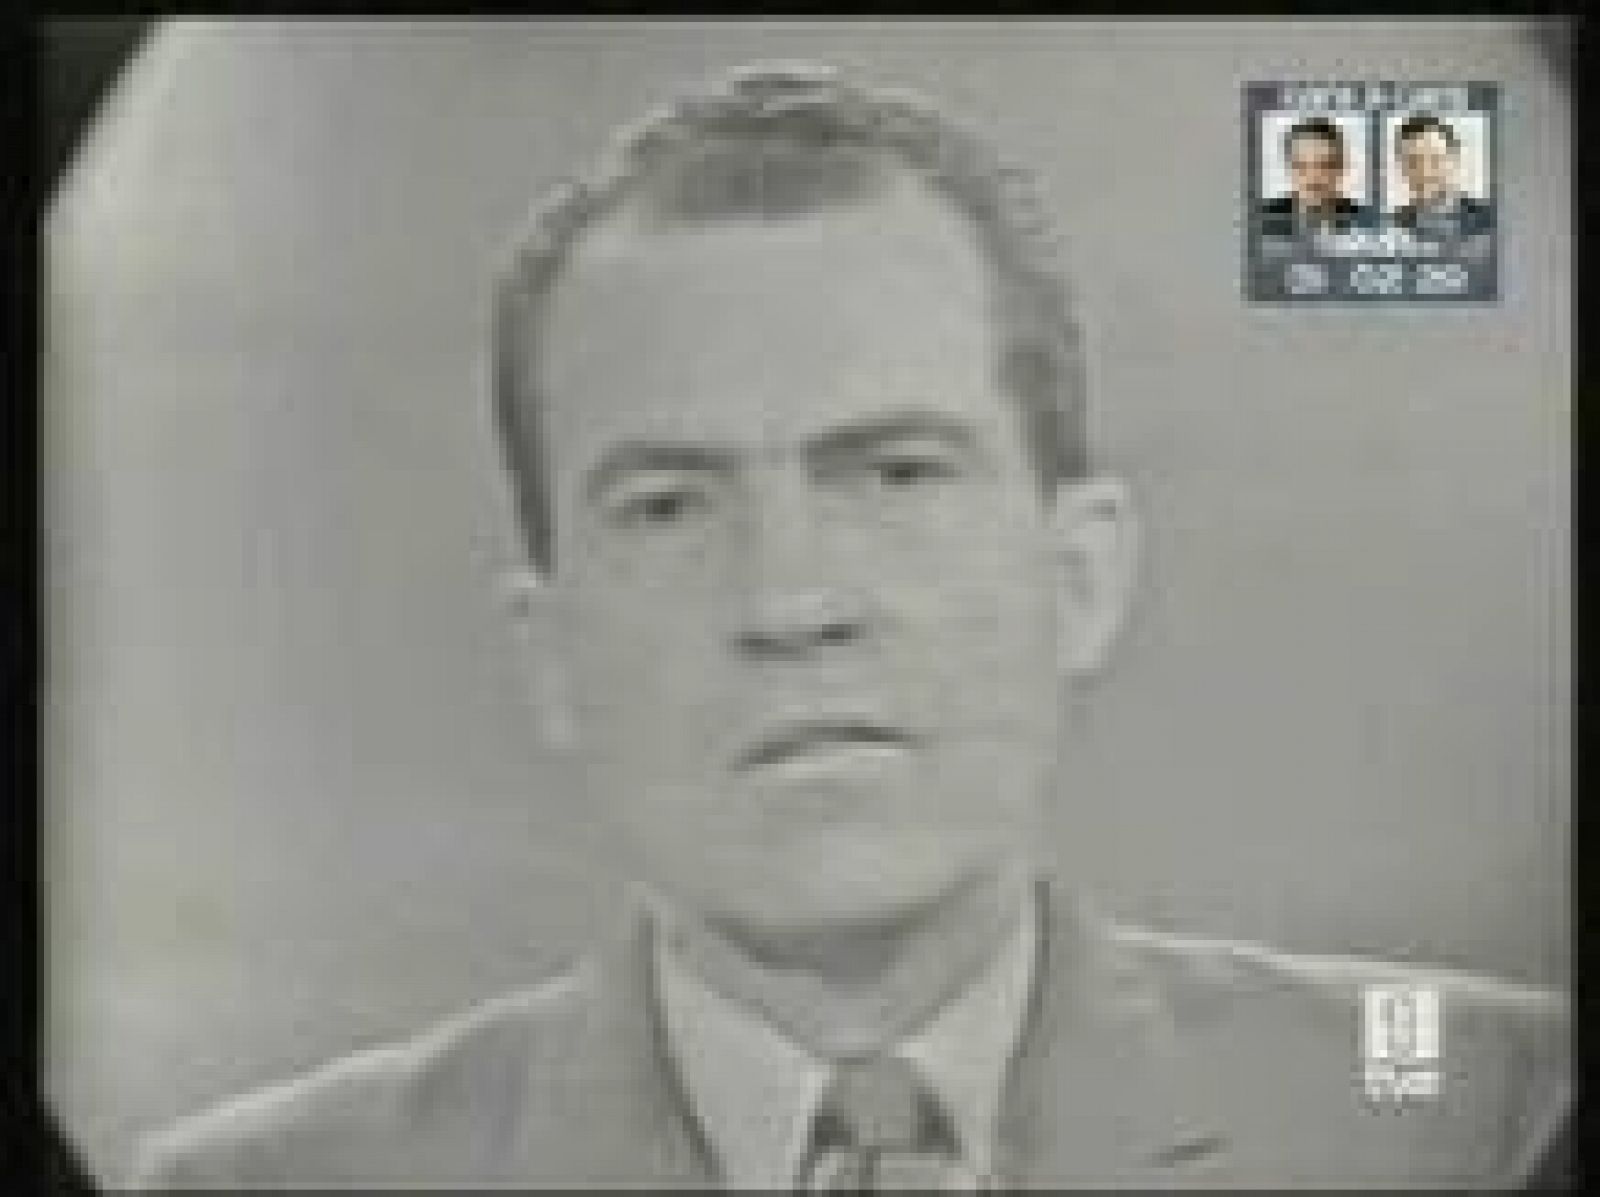 Los debates presidenciales en Estados Unidos tienen una importancia decisiva en el resultado de las elecciones, como han demostrado casos históricos, entre ellos el que Nixon perdió ante JFK.